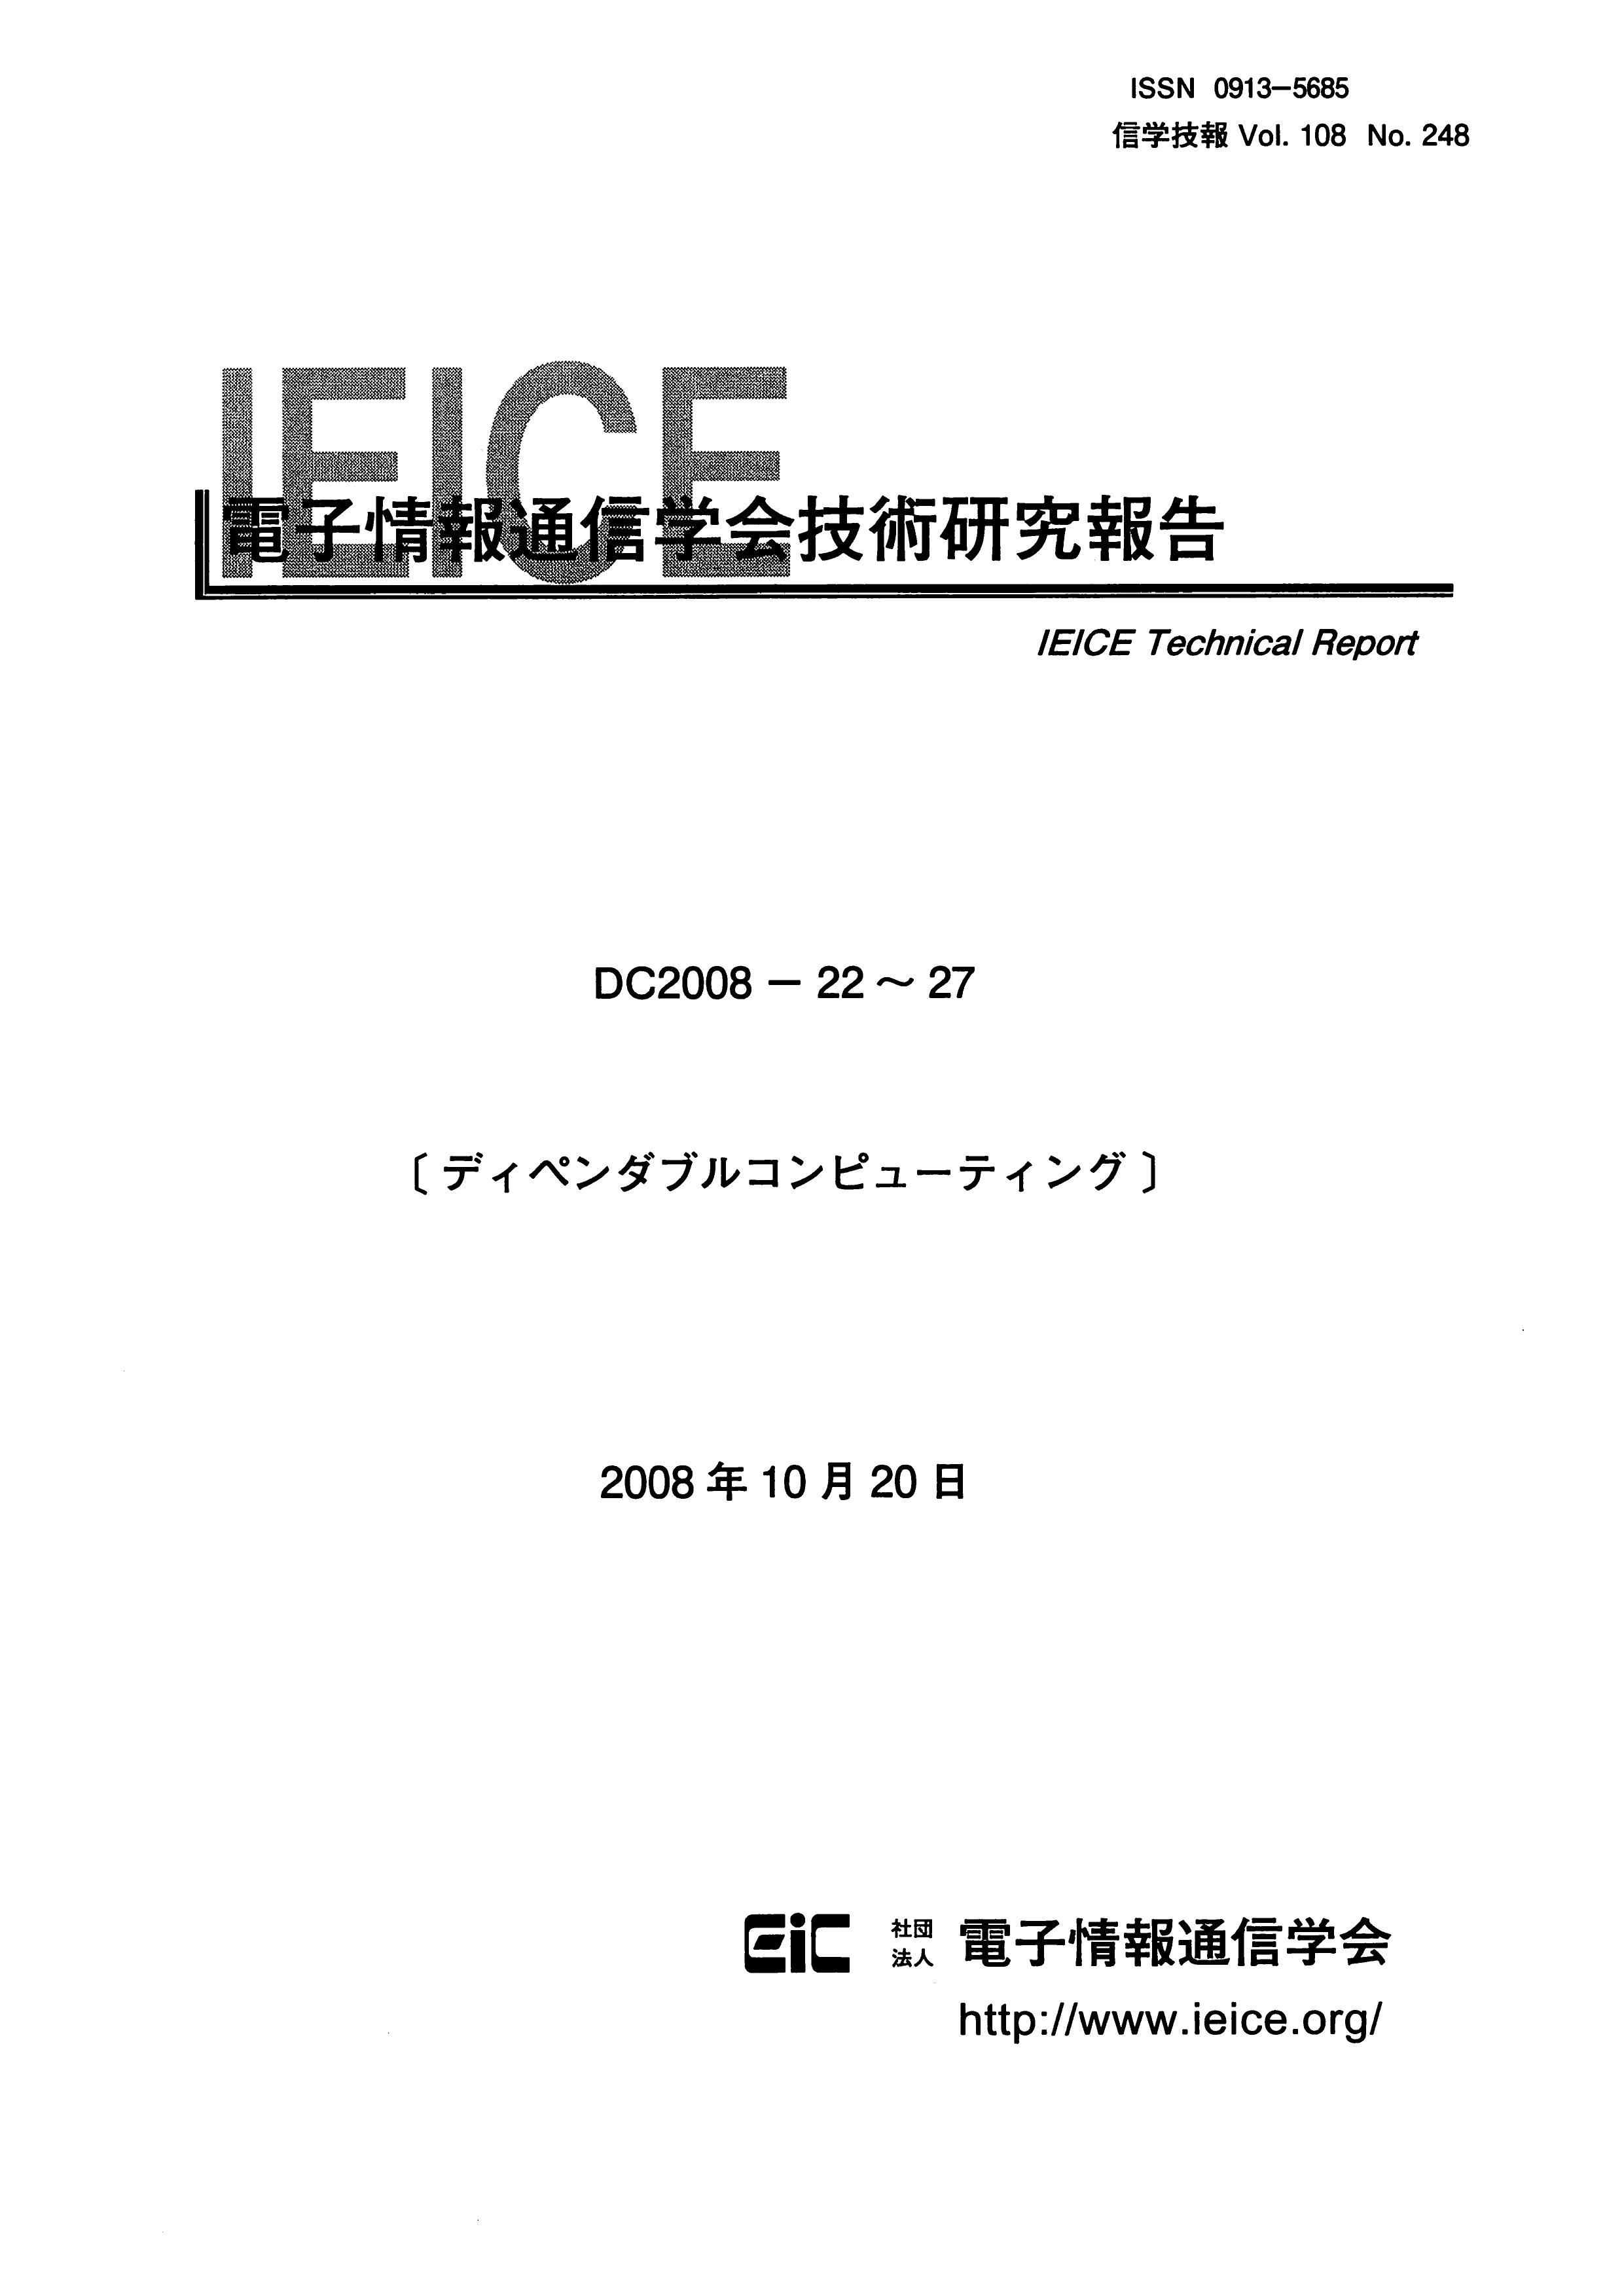 電子情報通信学会技術研究報告 Vol 108 No 248 08